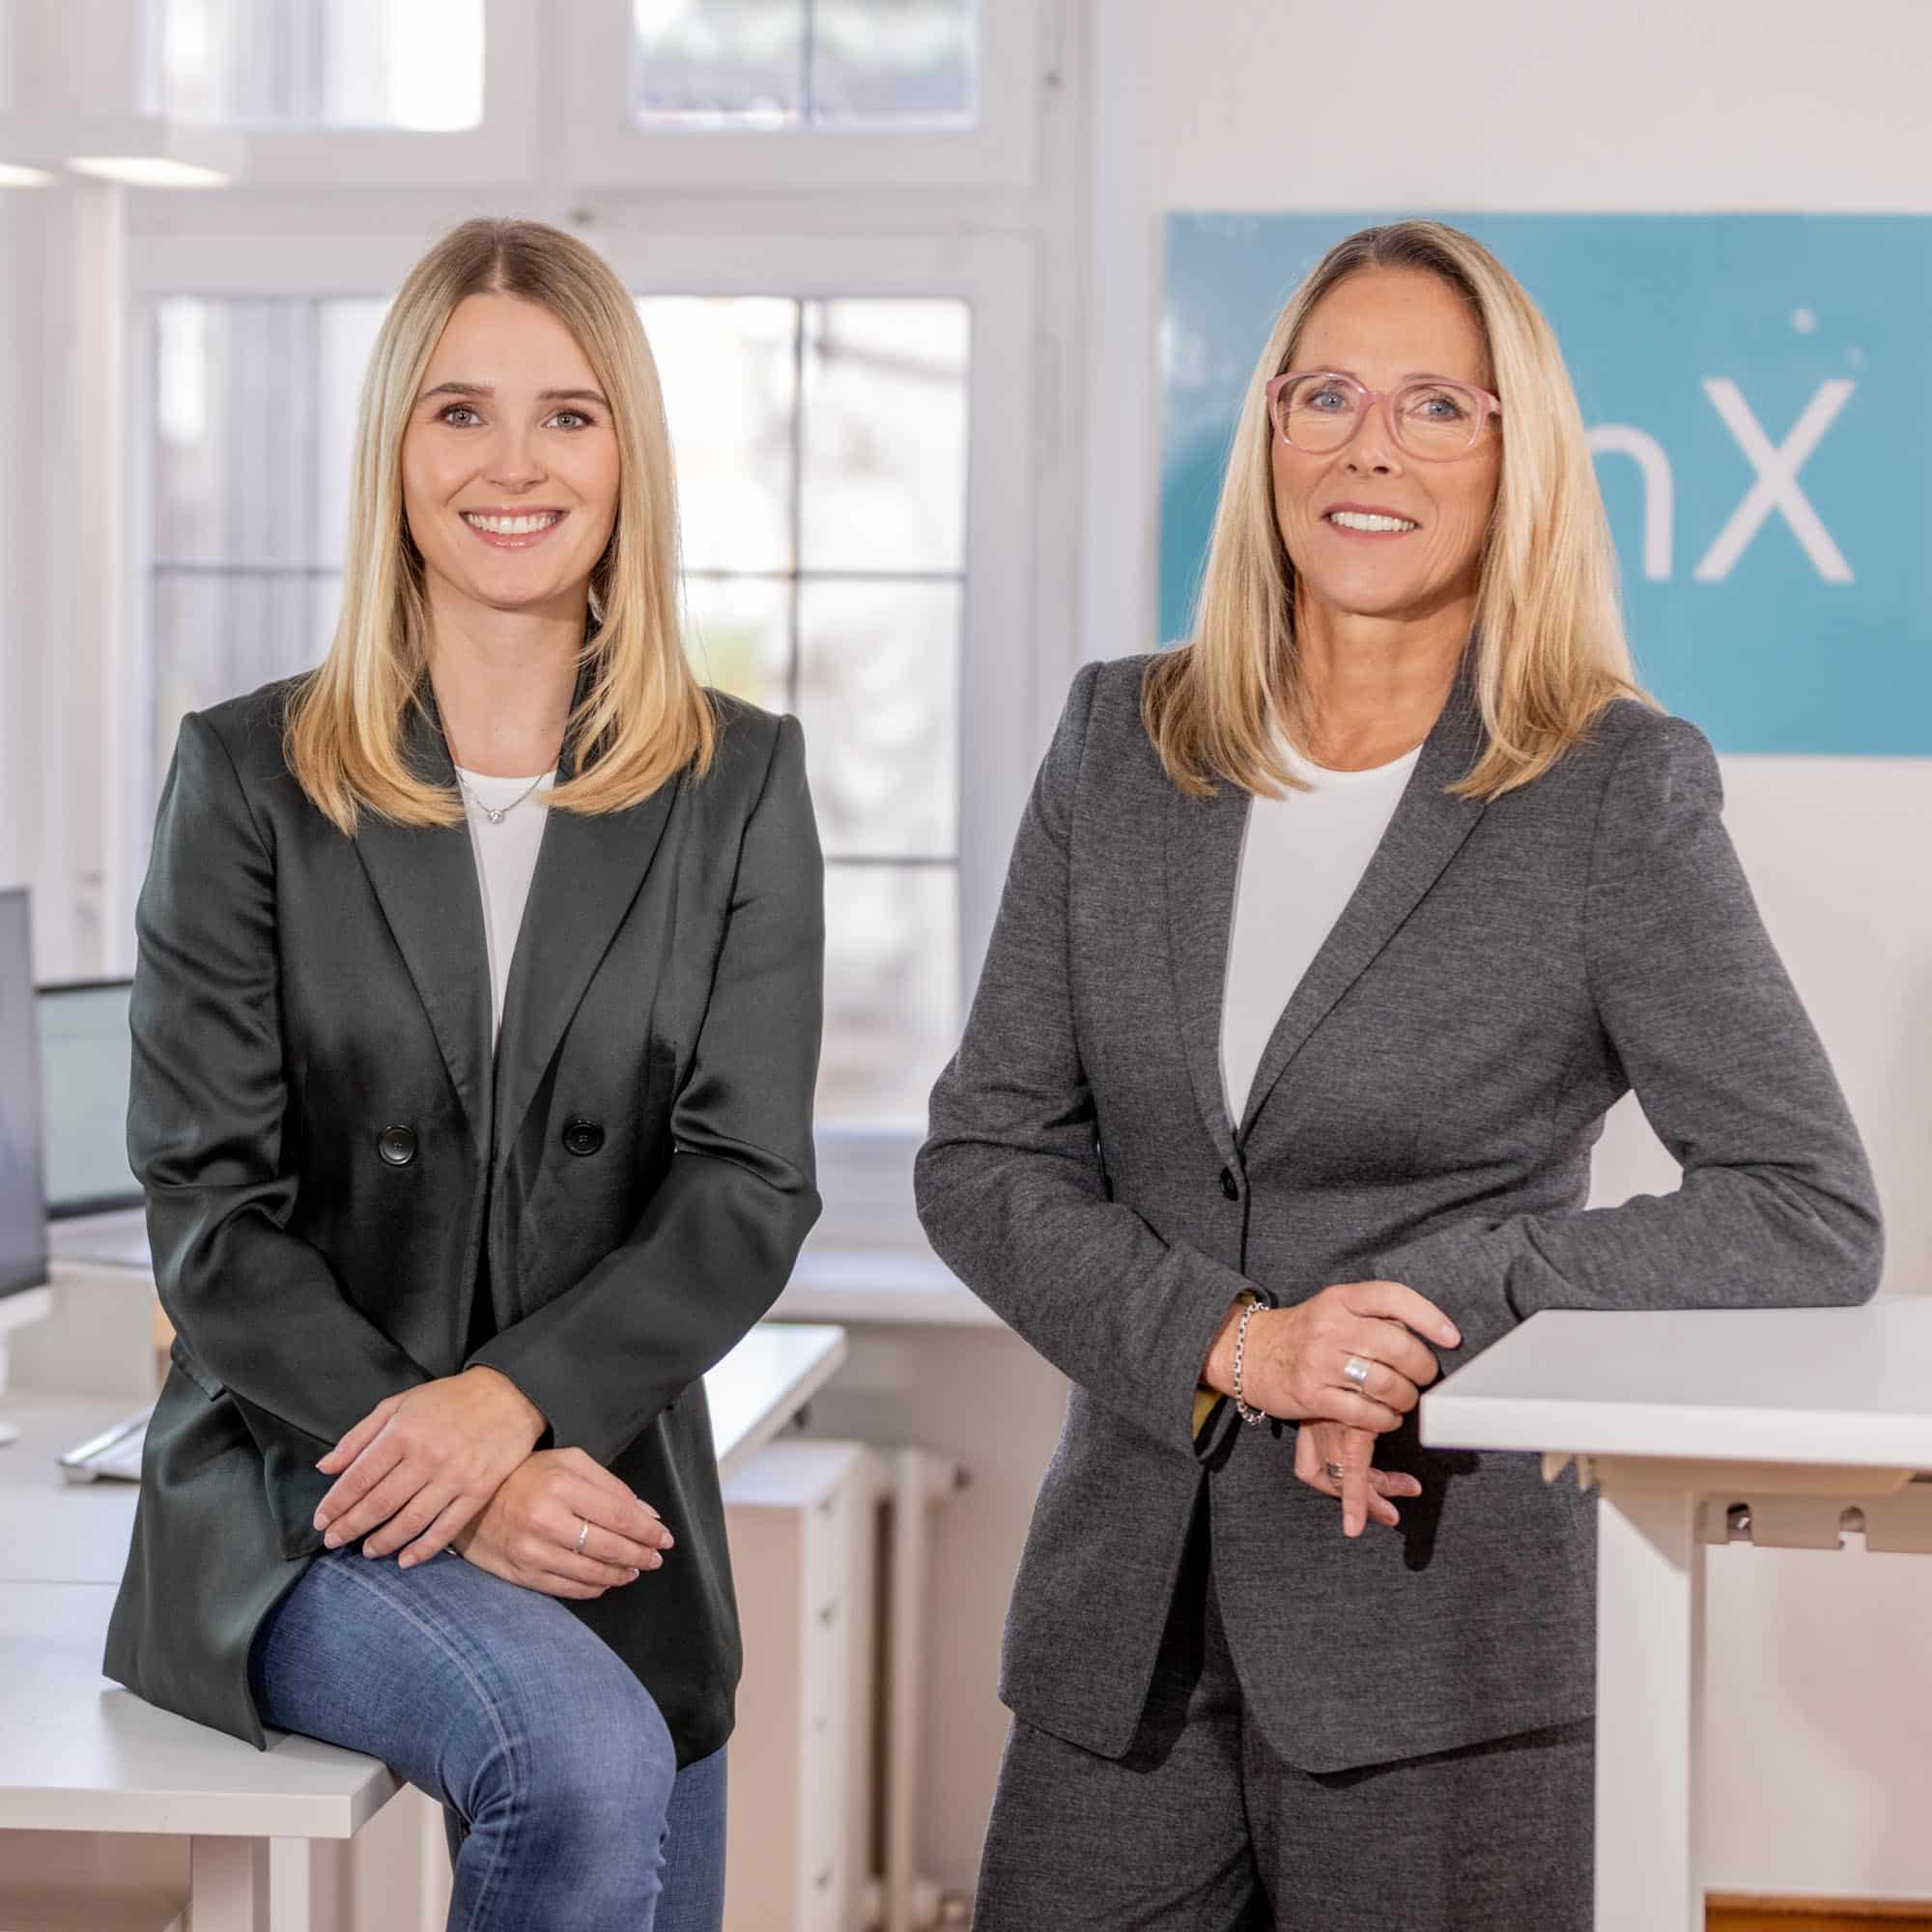 qinx - Talentvermittlung - Personalvermittlung - Lösungen für Unternehmen - Qualität, Innovation und Expertise von qinX